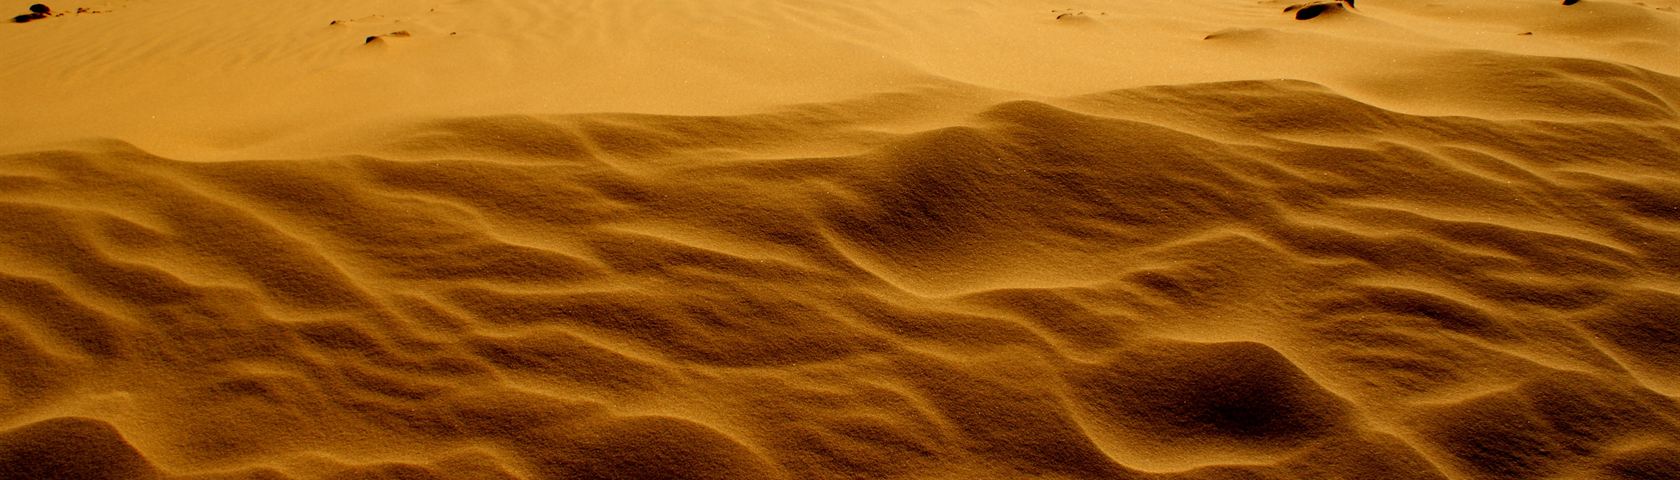 Sand Textures II